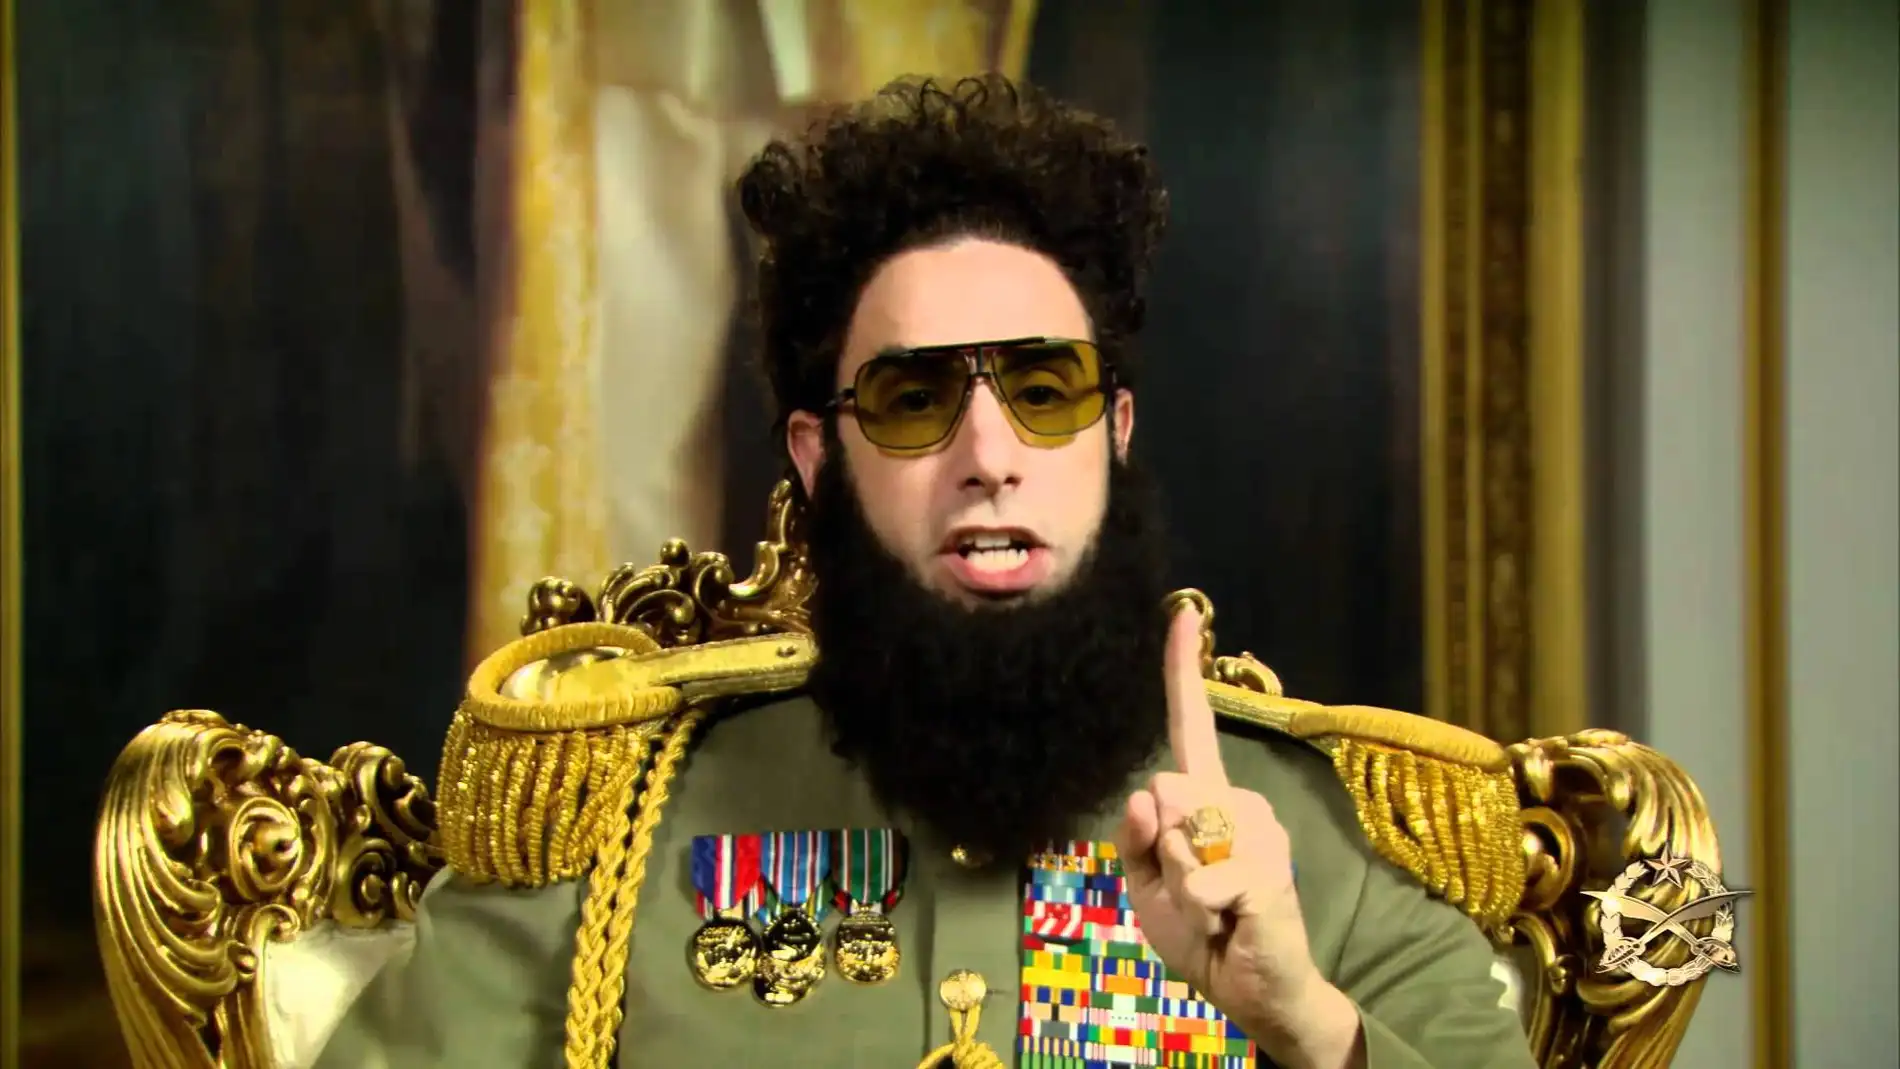 El Dictador